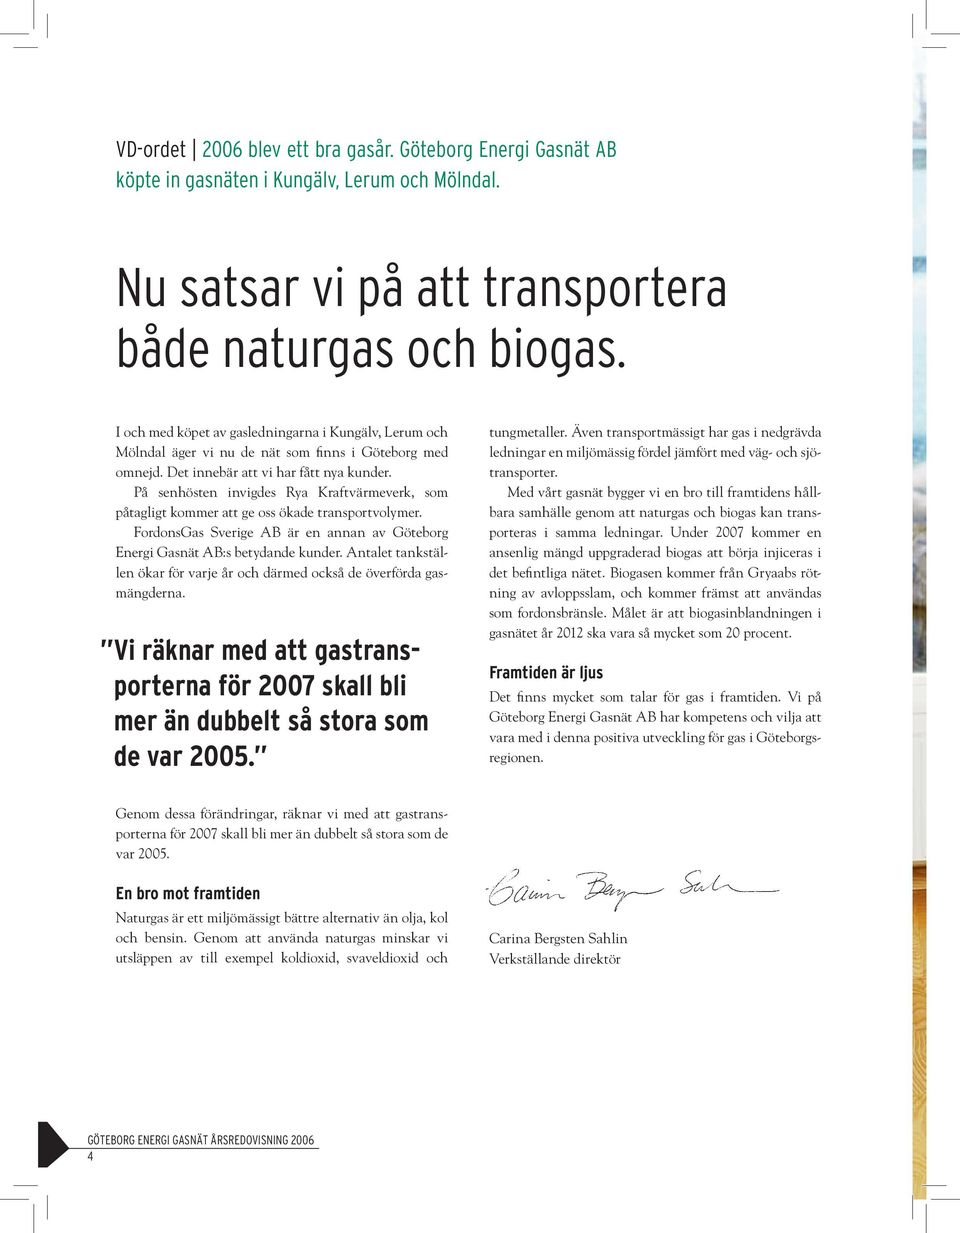 På senhösten invigdes Rya Kraftvärmeverk, som påtagligt kommer att ge oss ökade transportvolymer. FordonsGas Sverige AB är en annan av Göteborg Energi Gasnät AB:s betydande kunder.